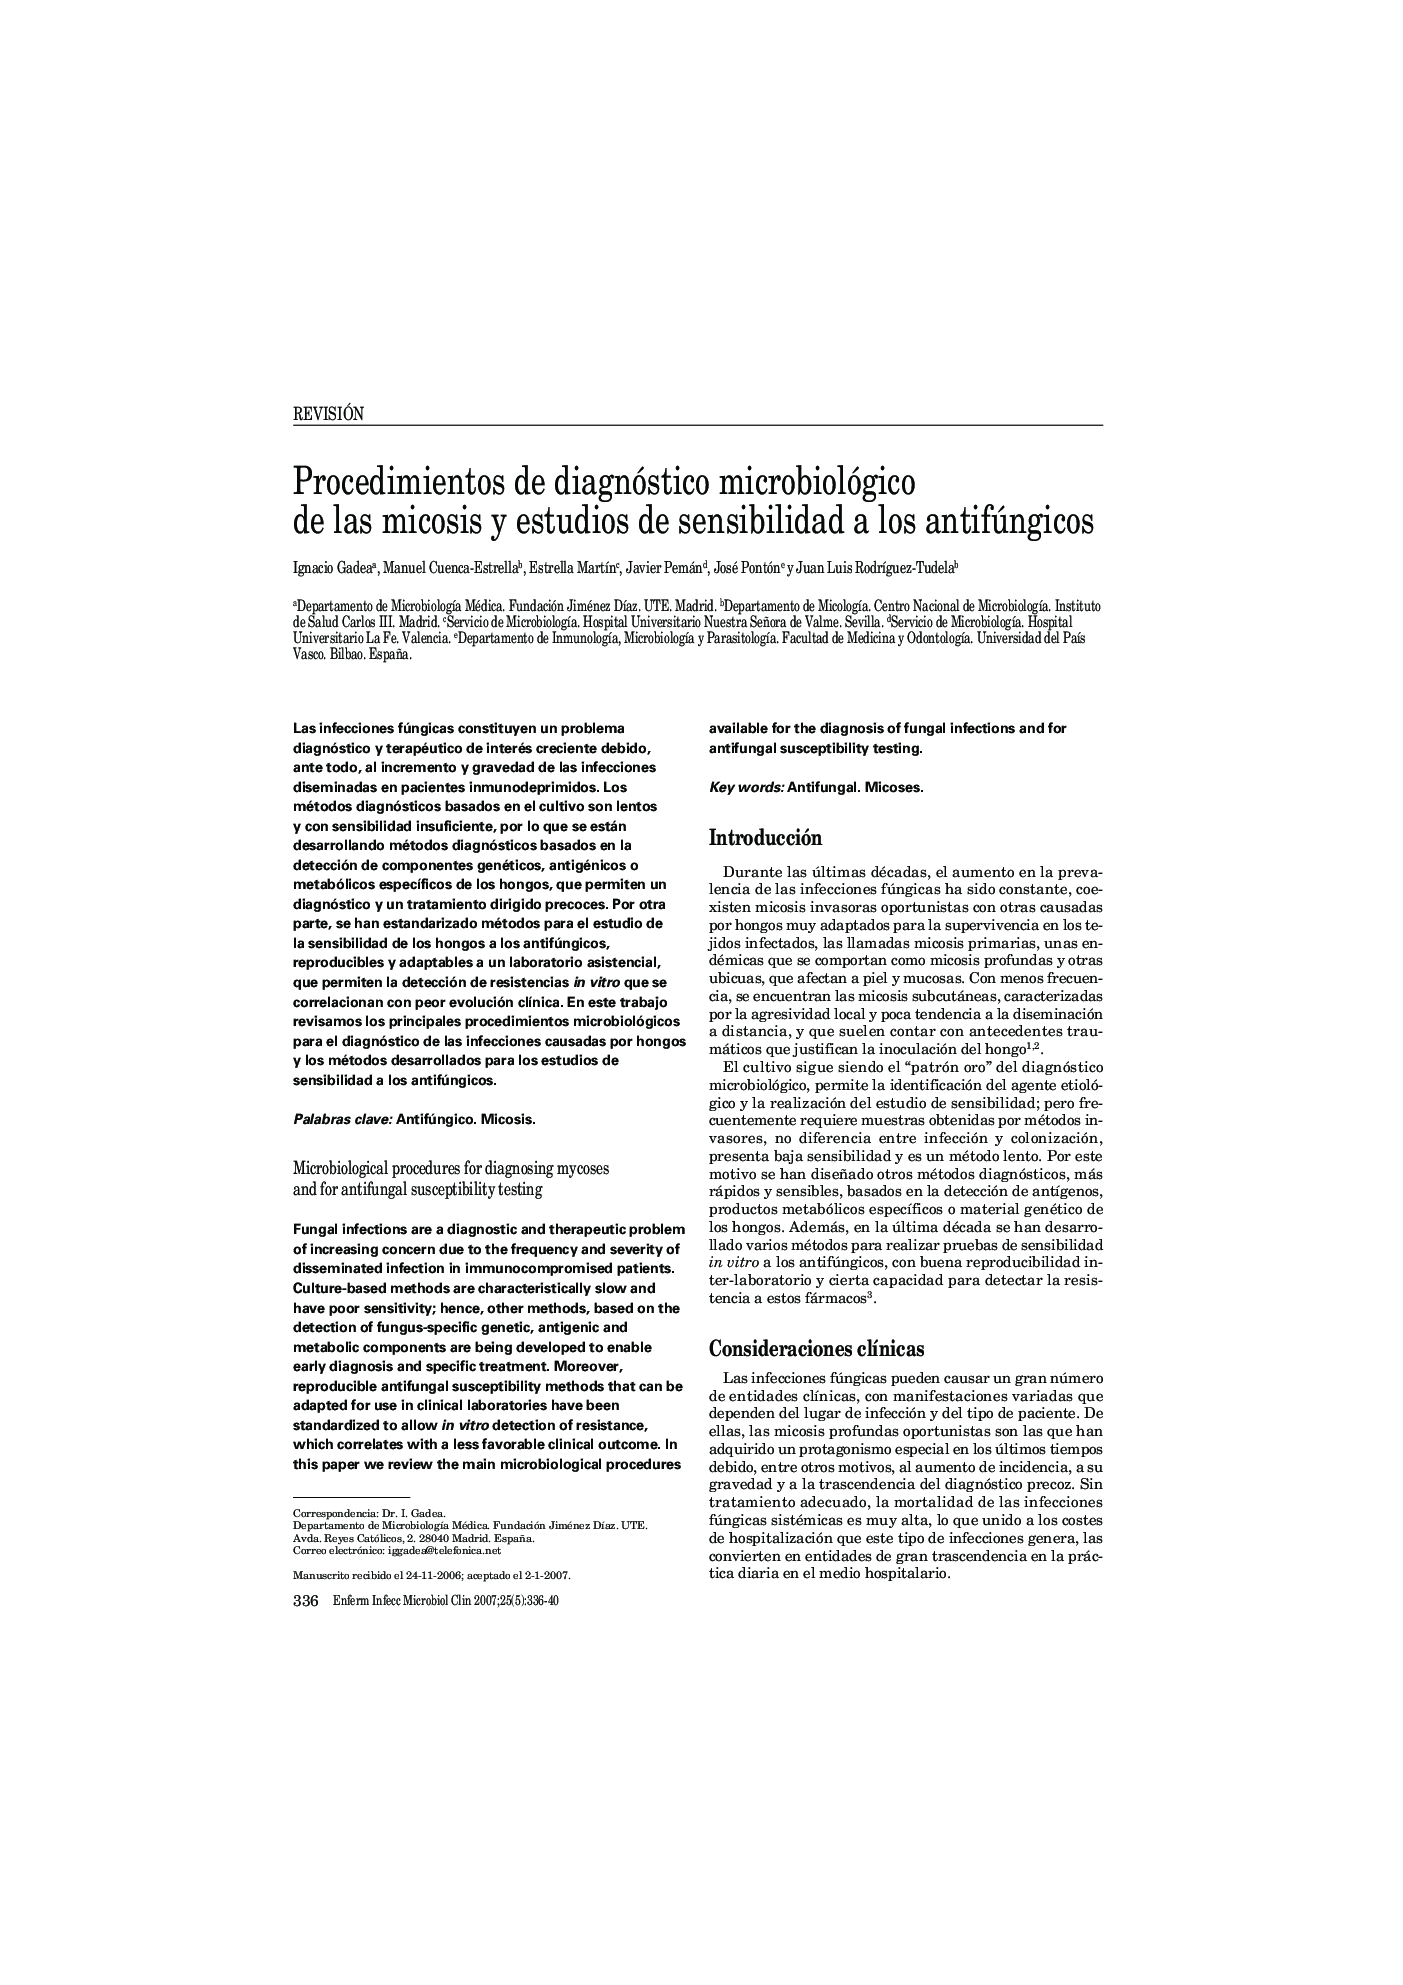 Procedimientos de diagnóstico microbiológico de las micosis y estudios de sensibilidad a los antifúngicos